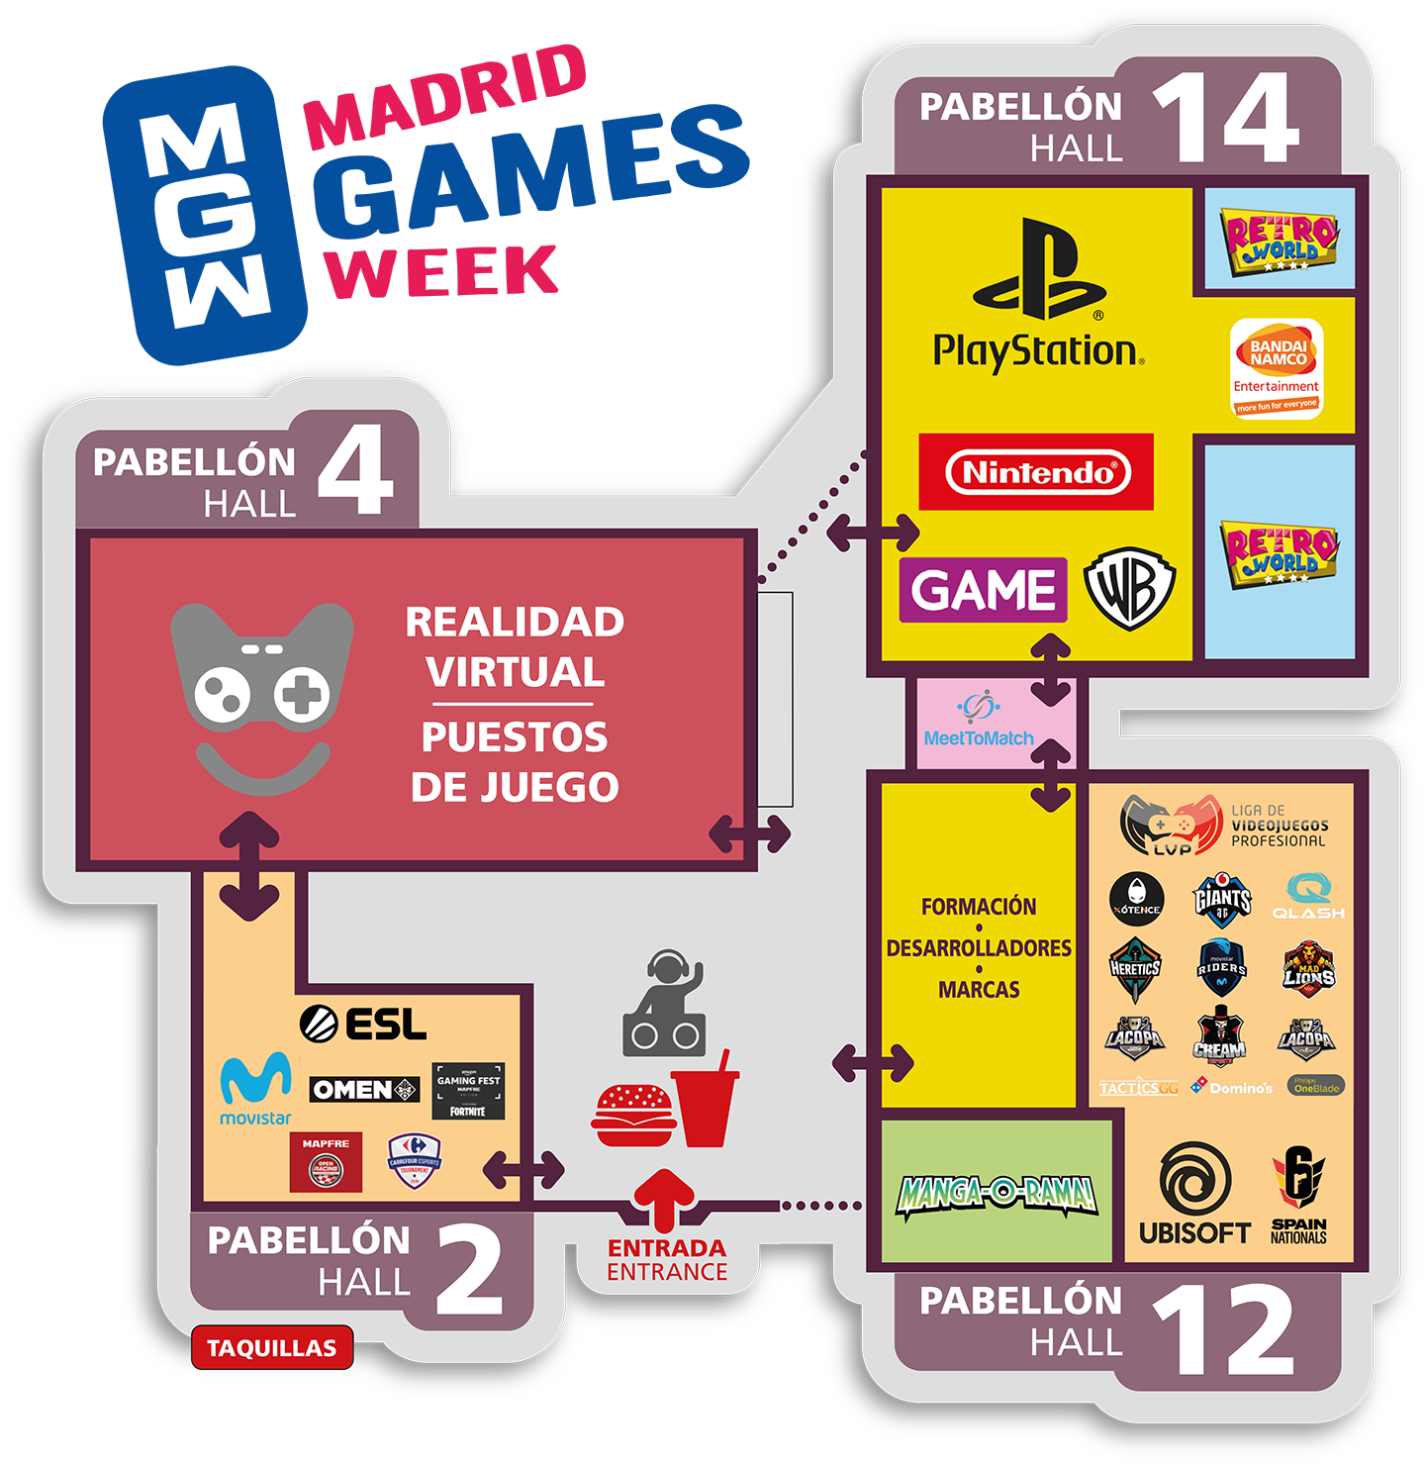 Feria del videojuego Madrid Games Week 2019. Parte 2. eSports, RV, marcas, juegos y mucho más.